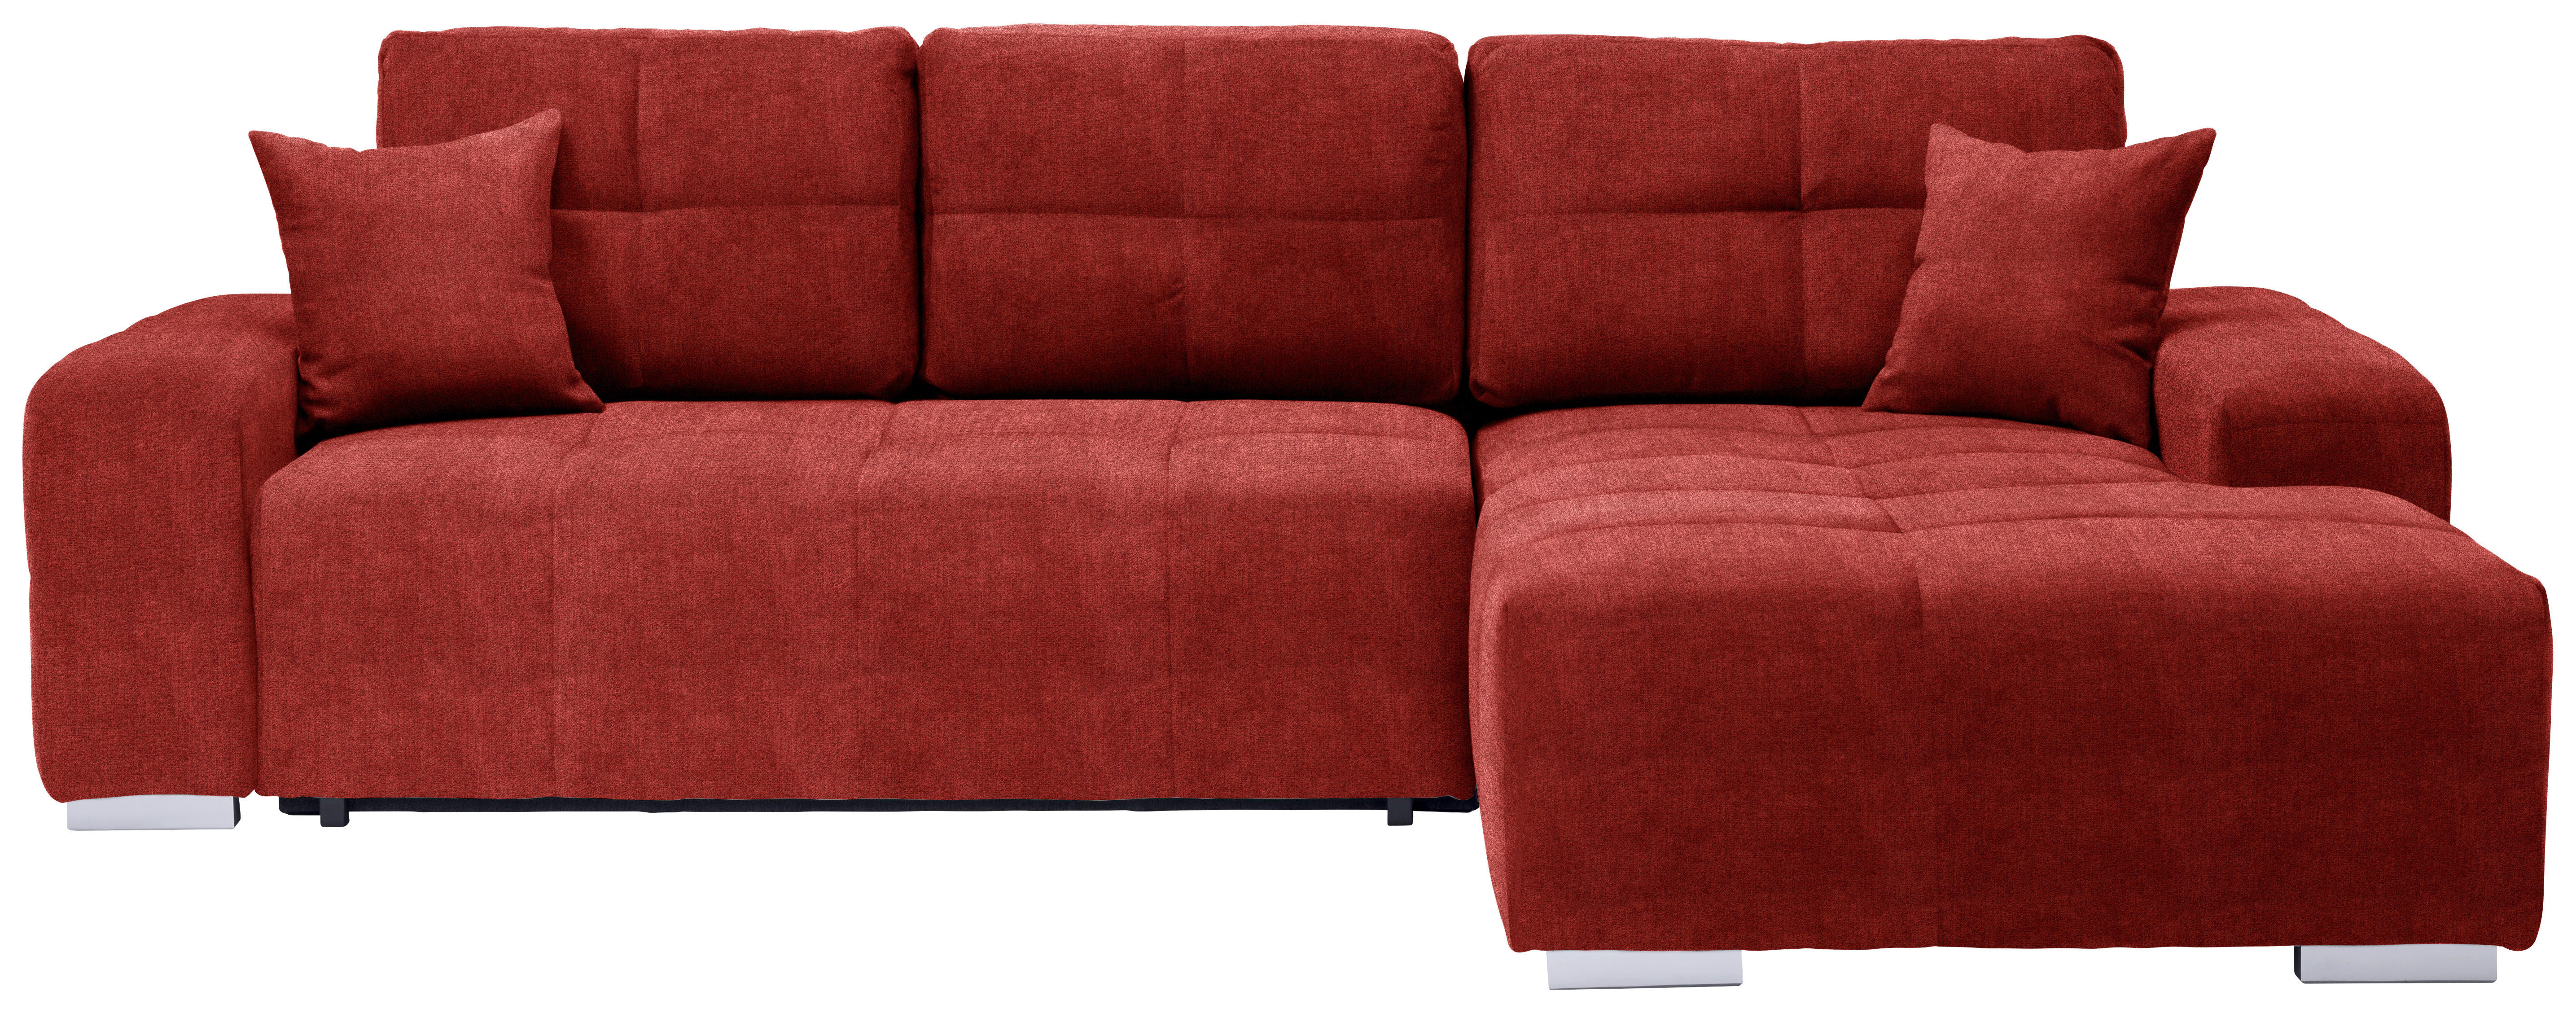 ECKSOFA Rot Webstoff  - Silberfarben/Rot, Design, Kunststoff/Textil (280/194cm) - Carryhome